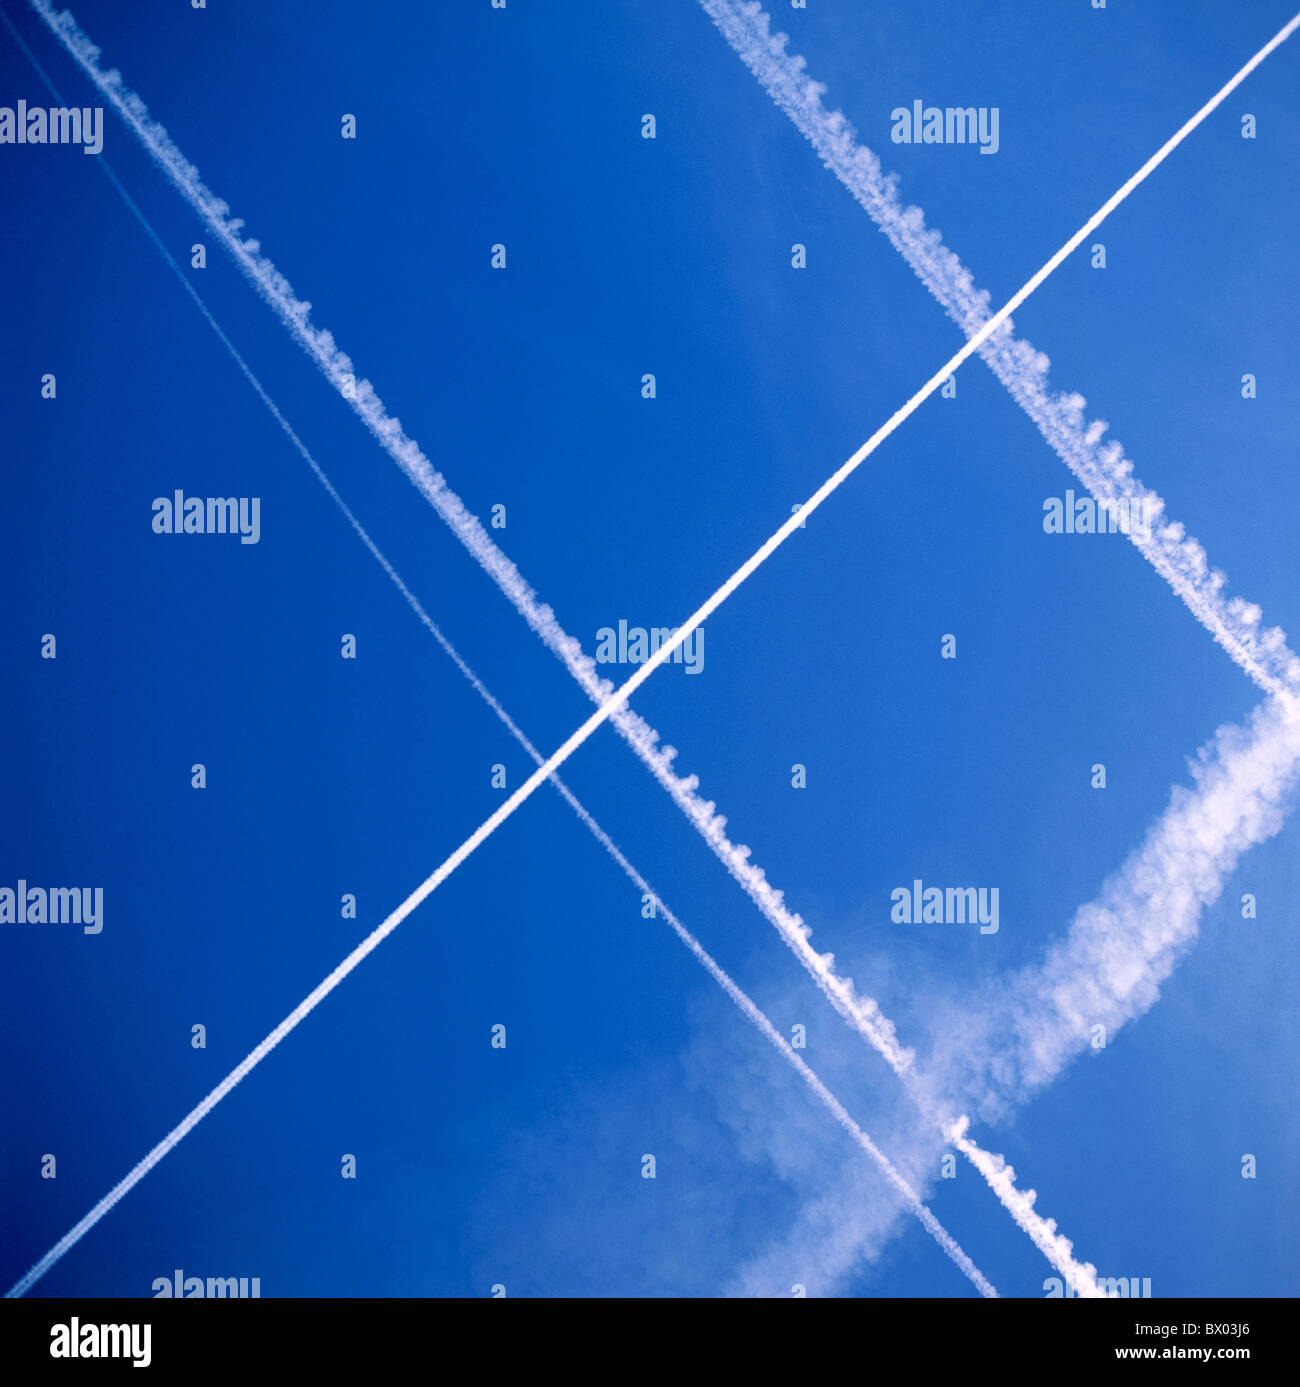 Trasversalmente le scie di condensazione del traffico aereo simbolo nuvole meteo Foto Stock